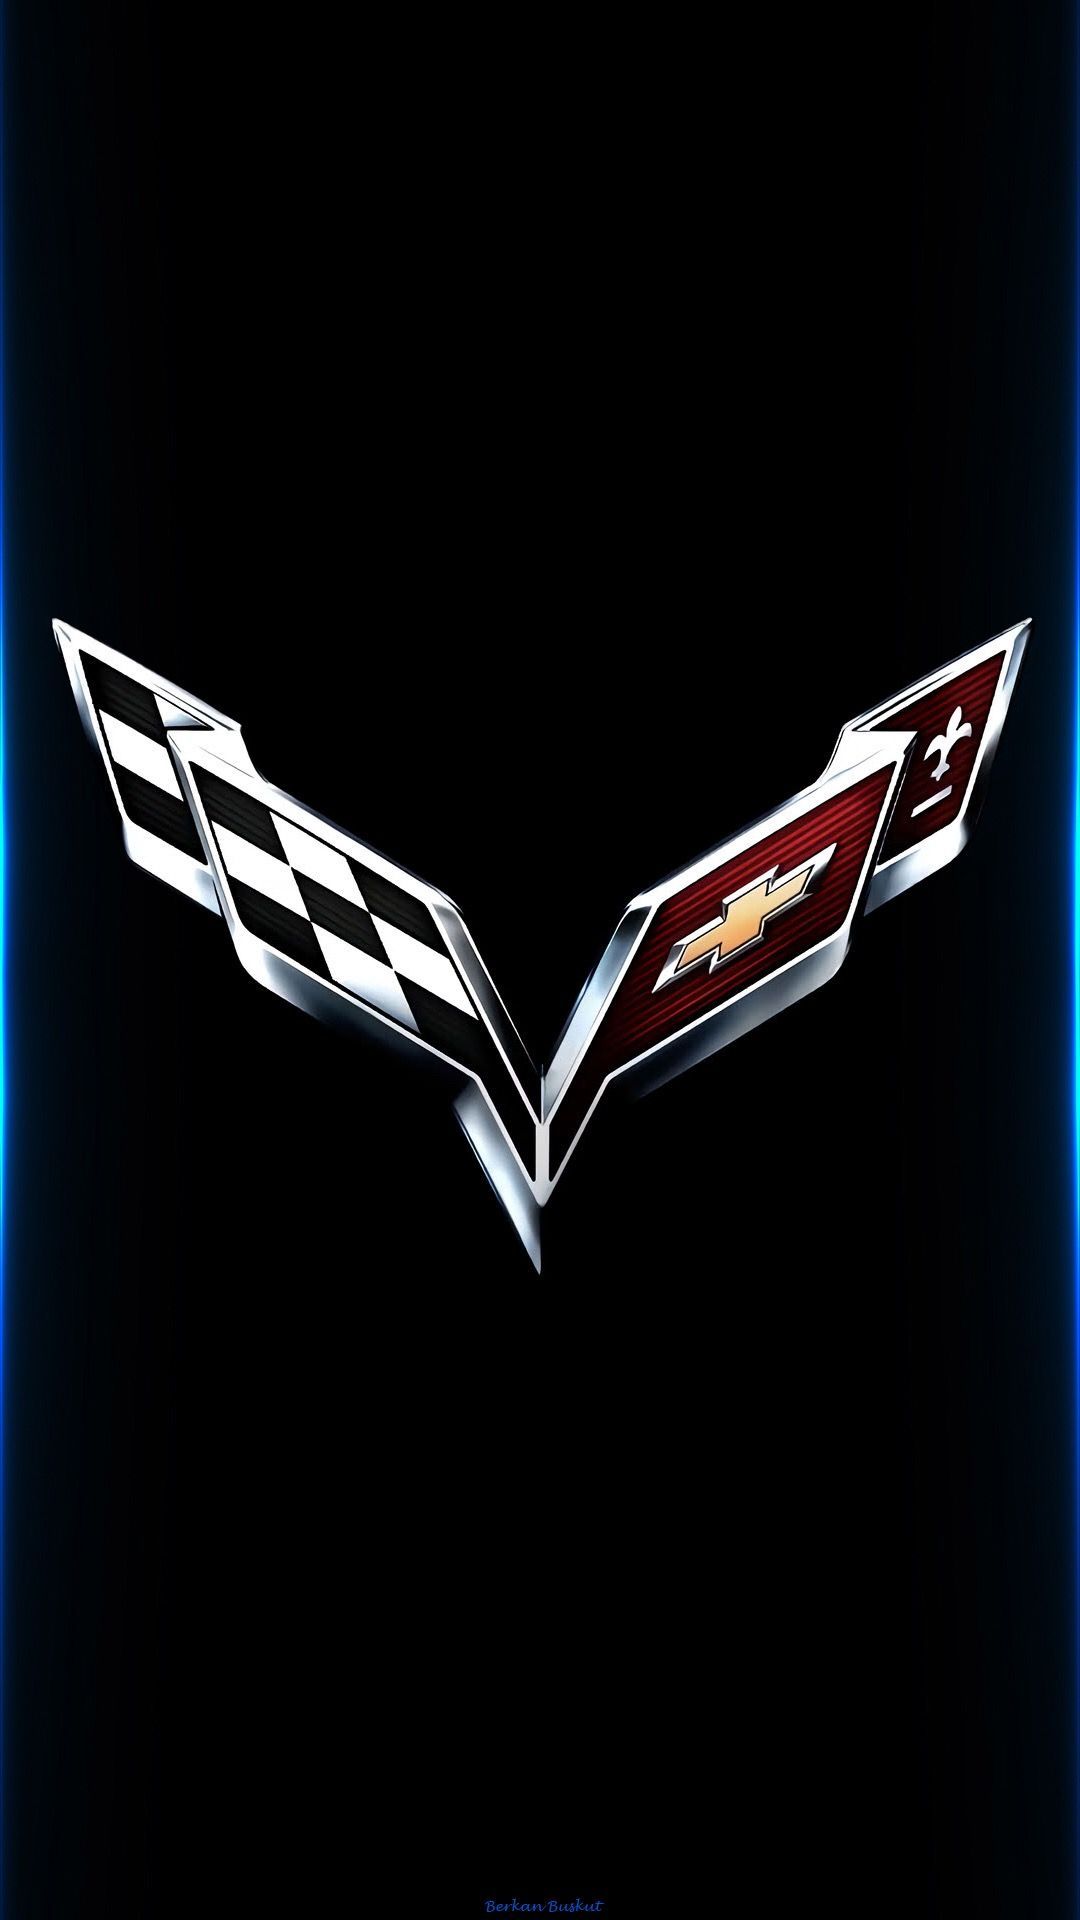 Corvette logo wallpaper. Corvette, Car brands logos, Chevrolet wallpaper